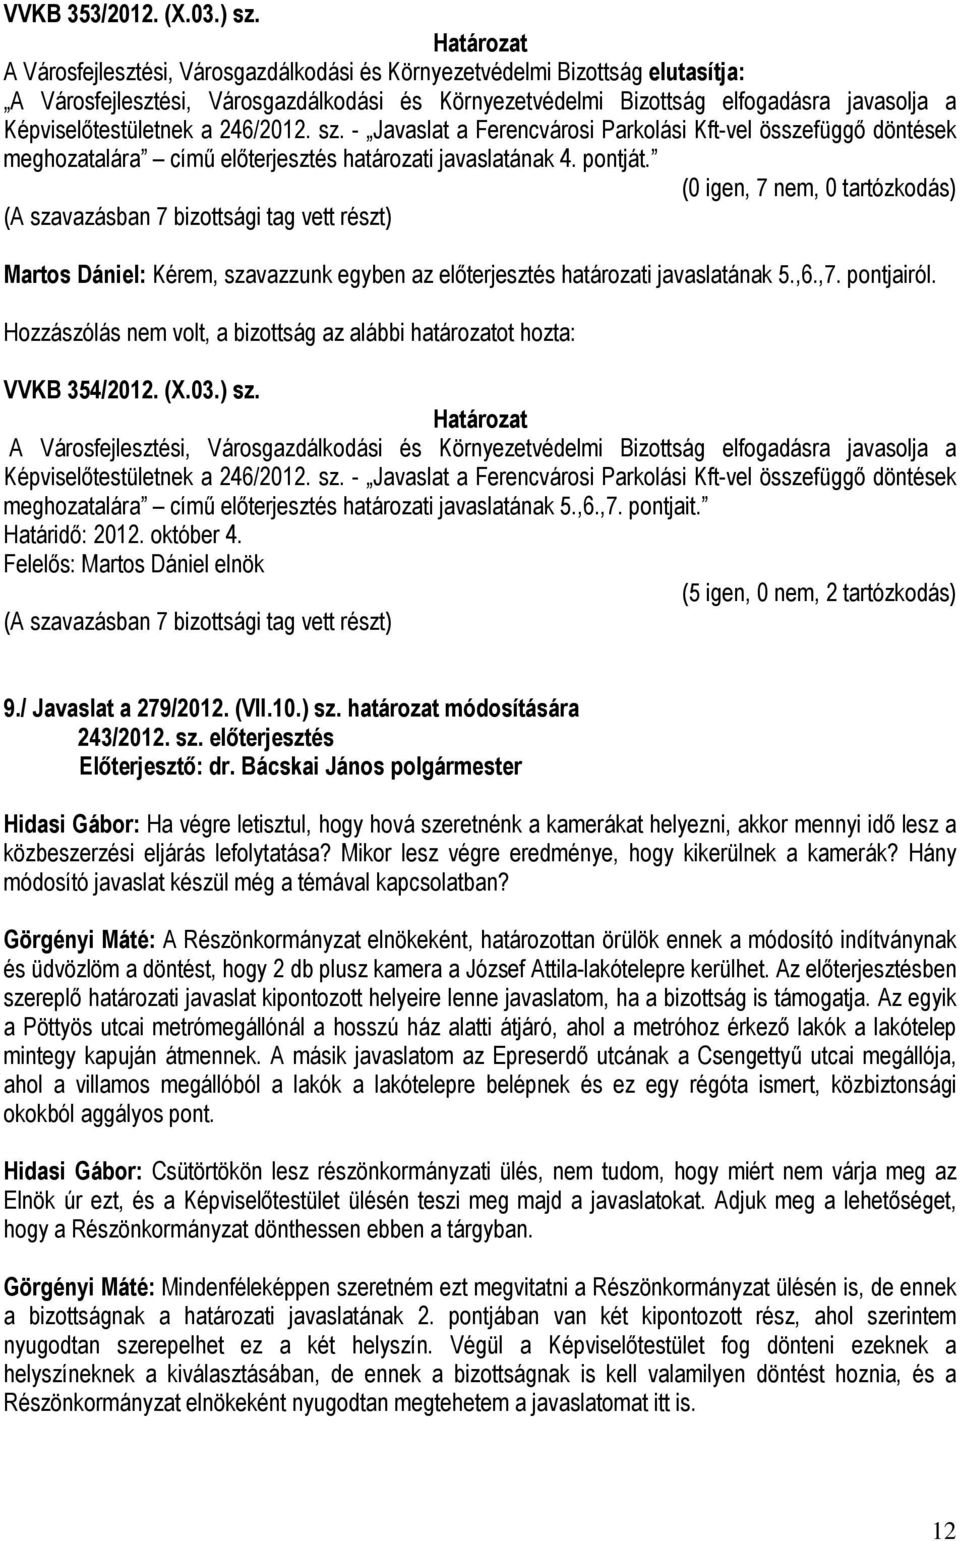 Képviselőtestületnek a 246/2012. sz. - Javaslat a Ferencvárosi Parkolási Kft-vel összefüggő döntések meghozatalára című előterjesztés határozati javaslatának 5.,6.,7. pontjait.